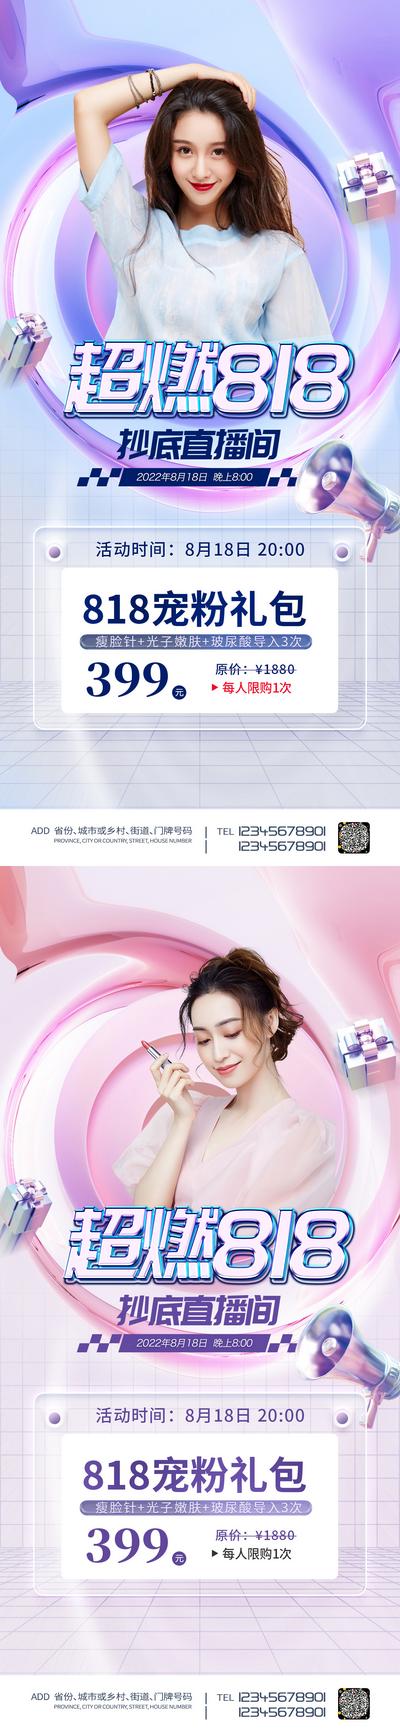 【南门网】广告 海报 医美 人物 模特 818 活动 促销 直播 预售